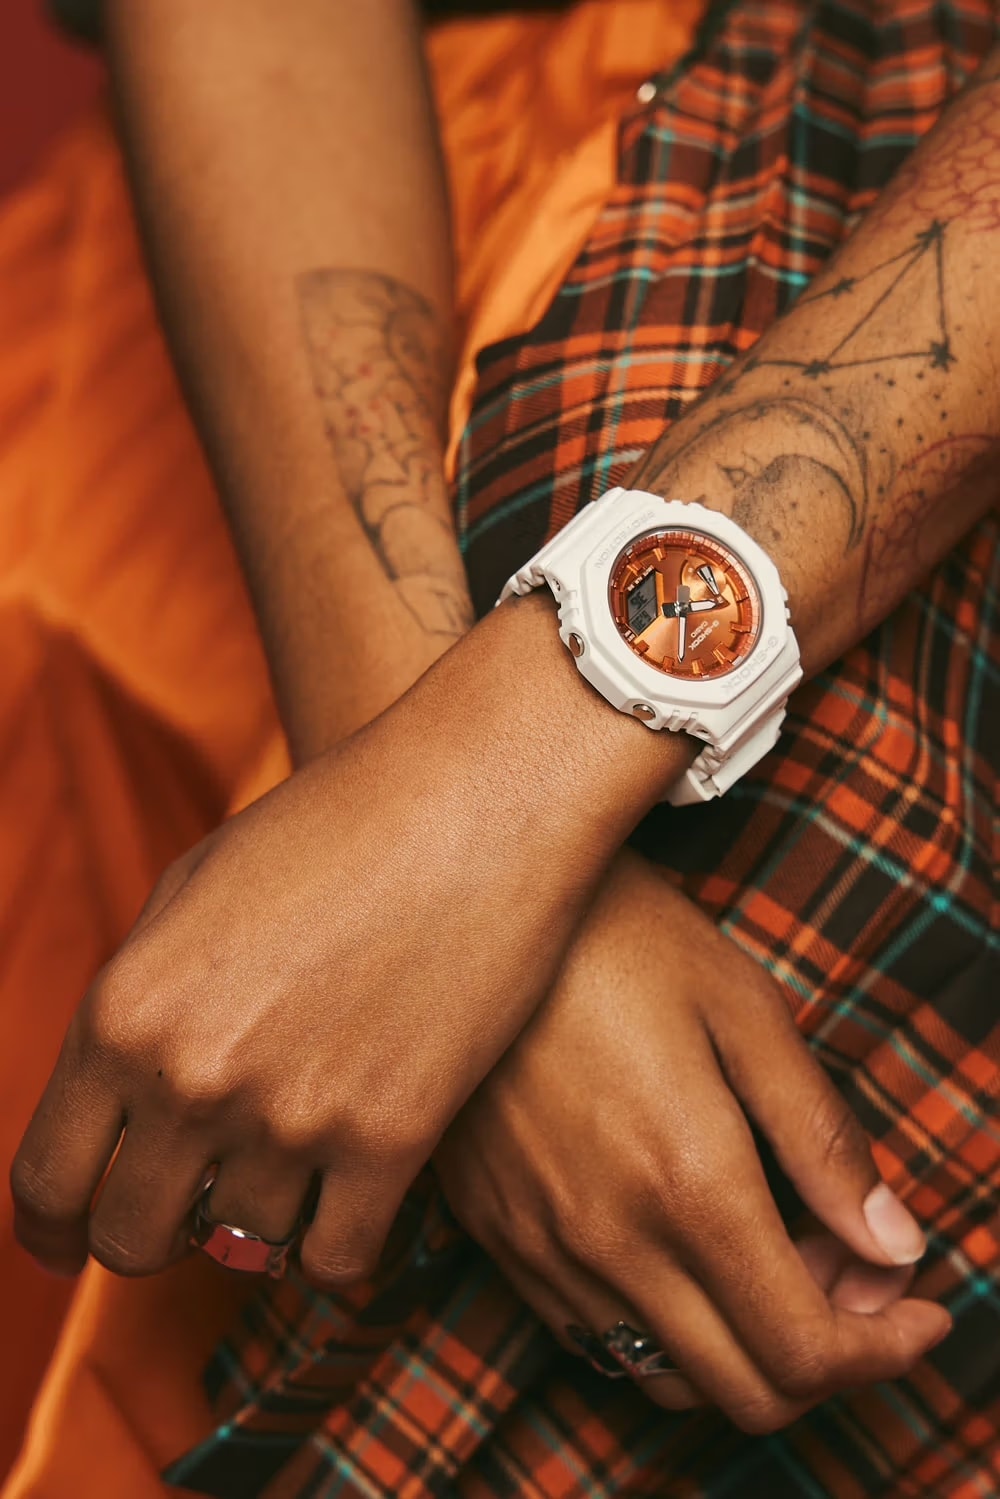 Gショックからホリデーシーズンにギフトしたくなるような腕時計がリリース G-SHOCK'S GIFT-GIVING SEASON COLLECTION